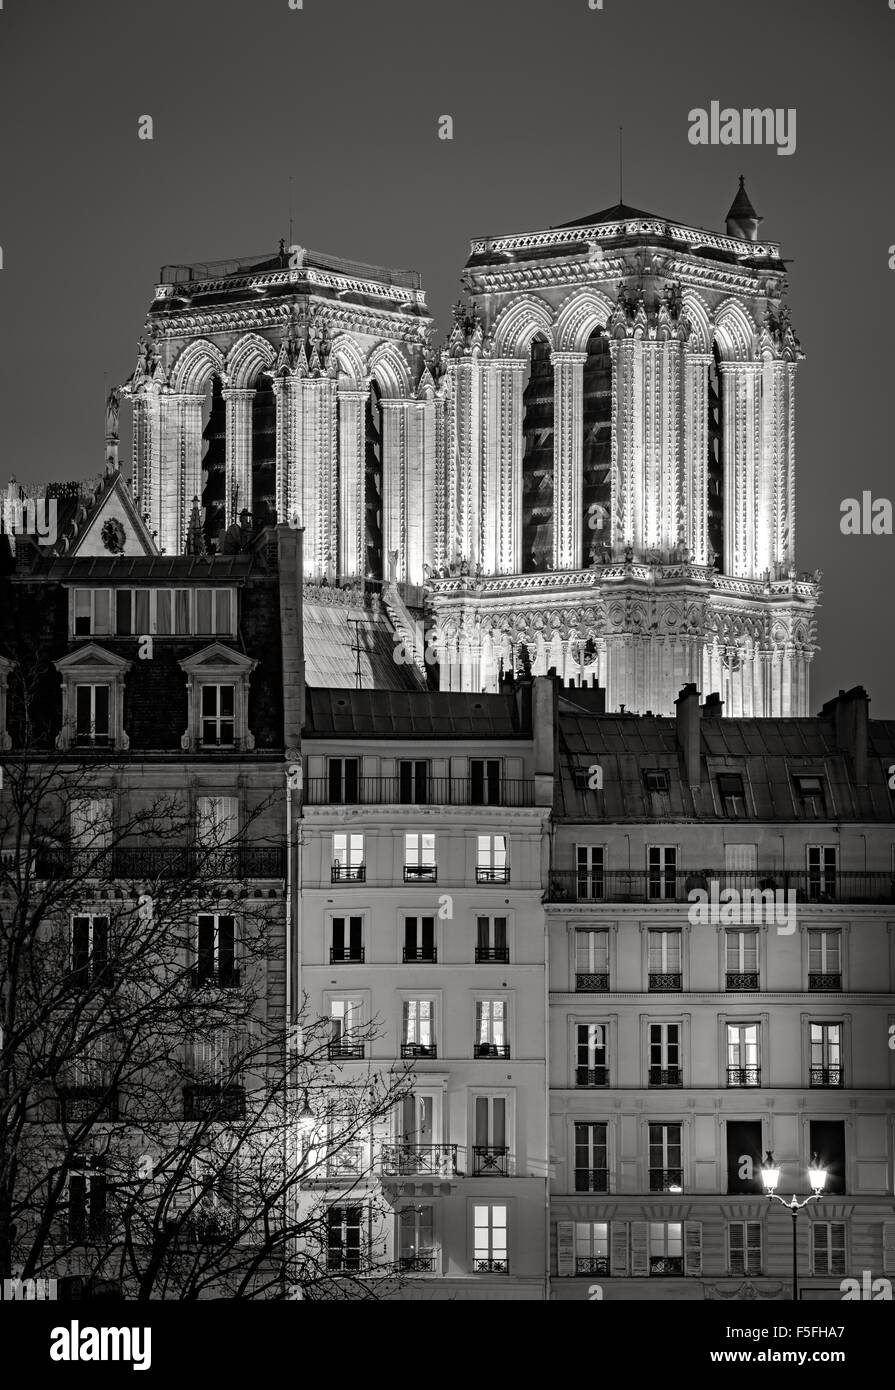 Les tours gothiques français de Notre Dame de Paris Cathédrale illuminée la nuit. L'Ile de la Cité, 4e arrondissement, Paris, France Banque D'Images